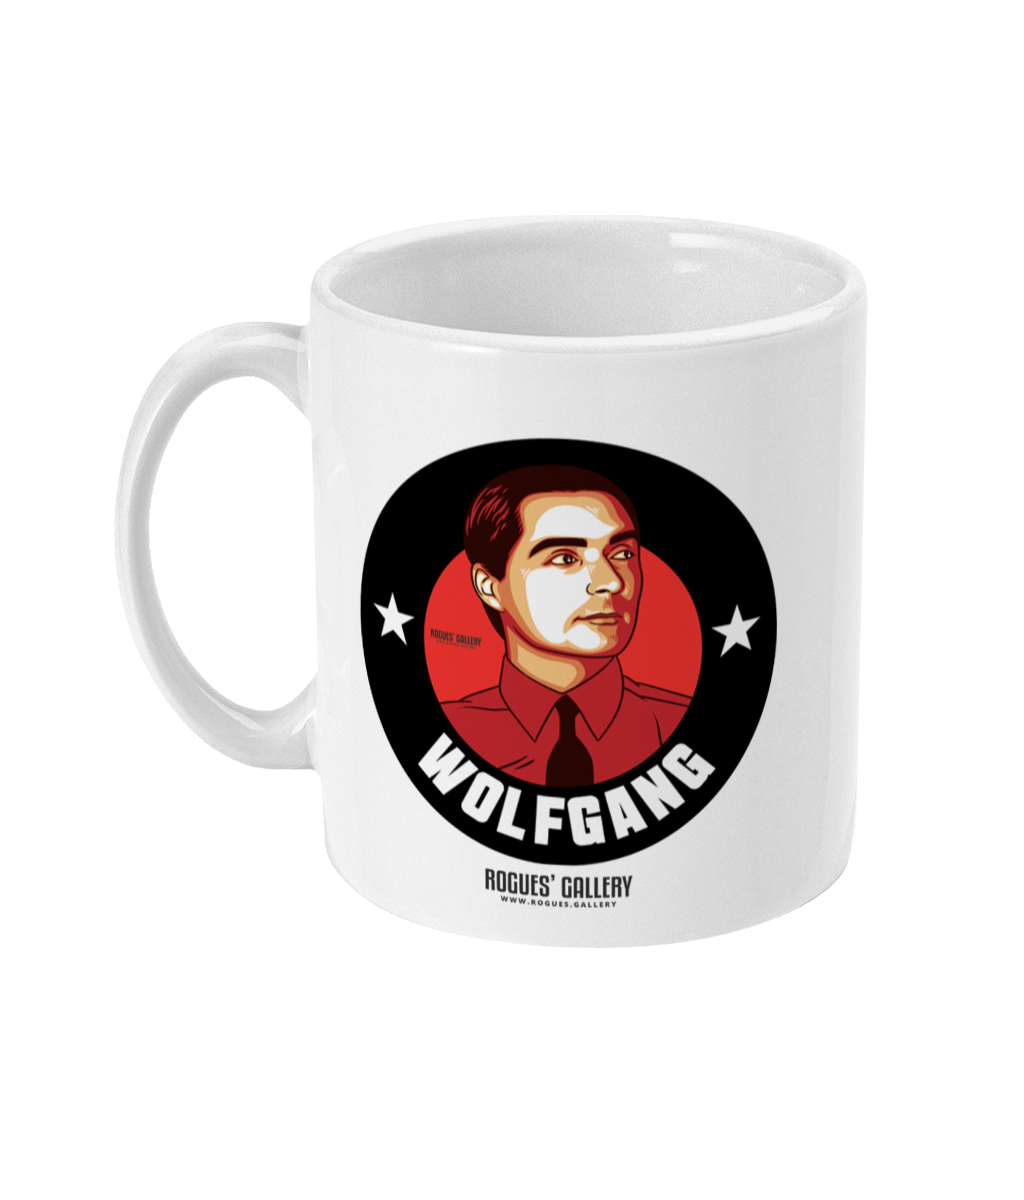 Wolfgang Kraftwerk mug